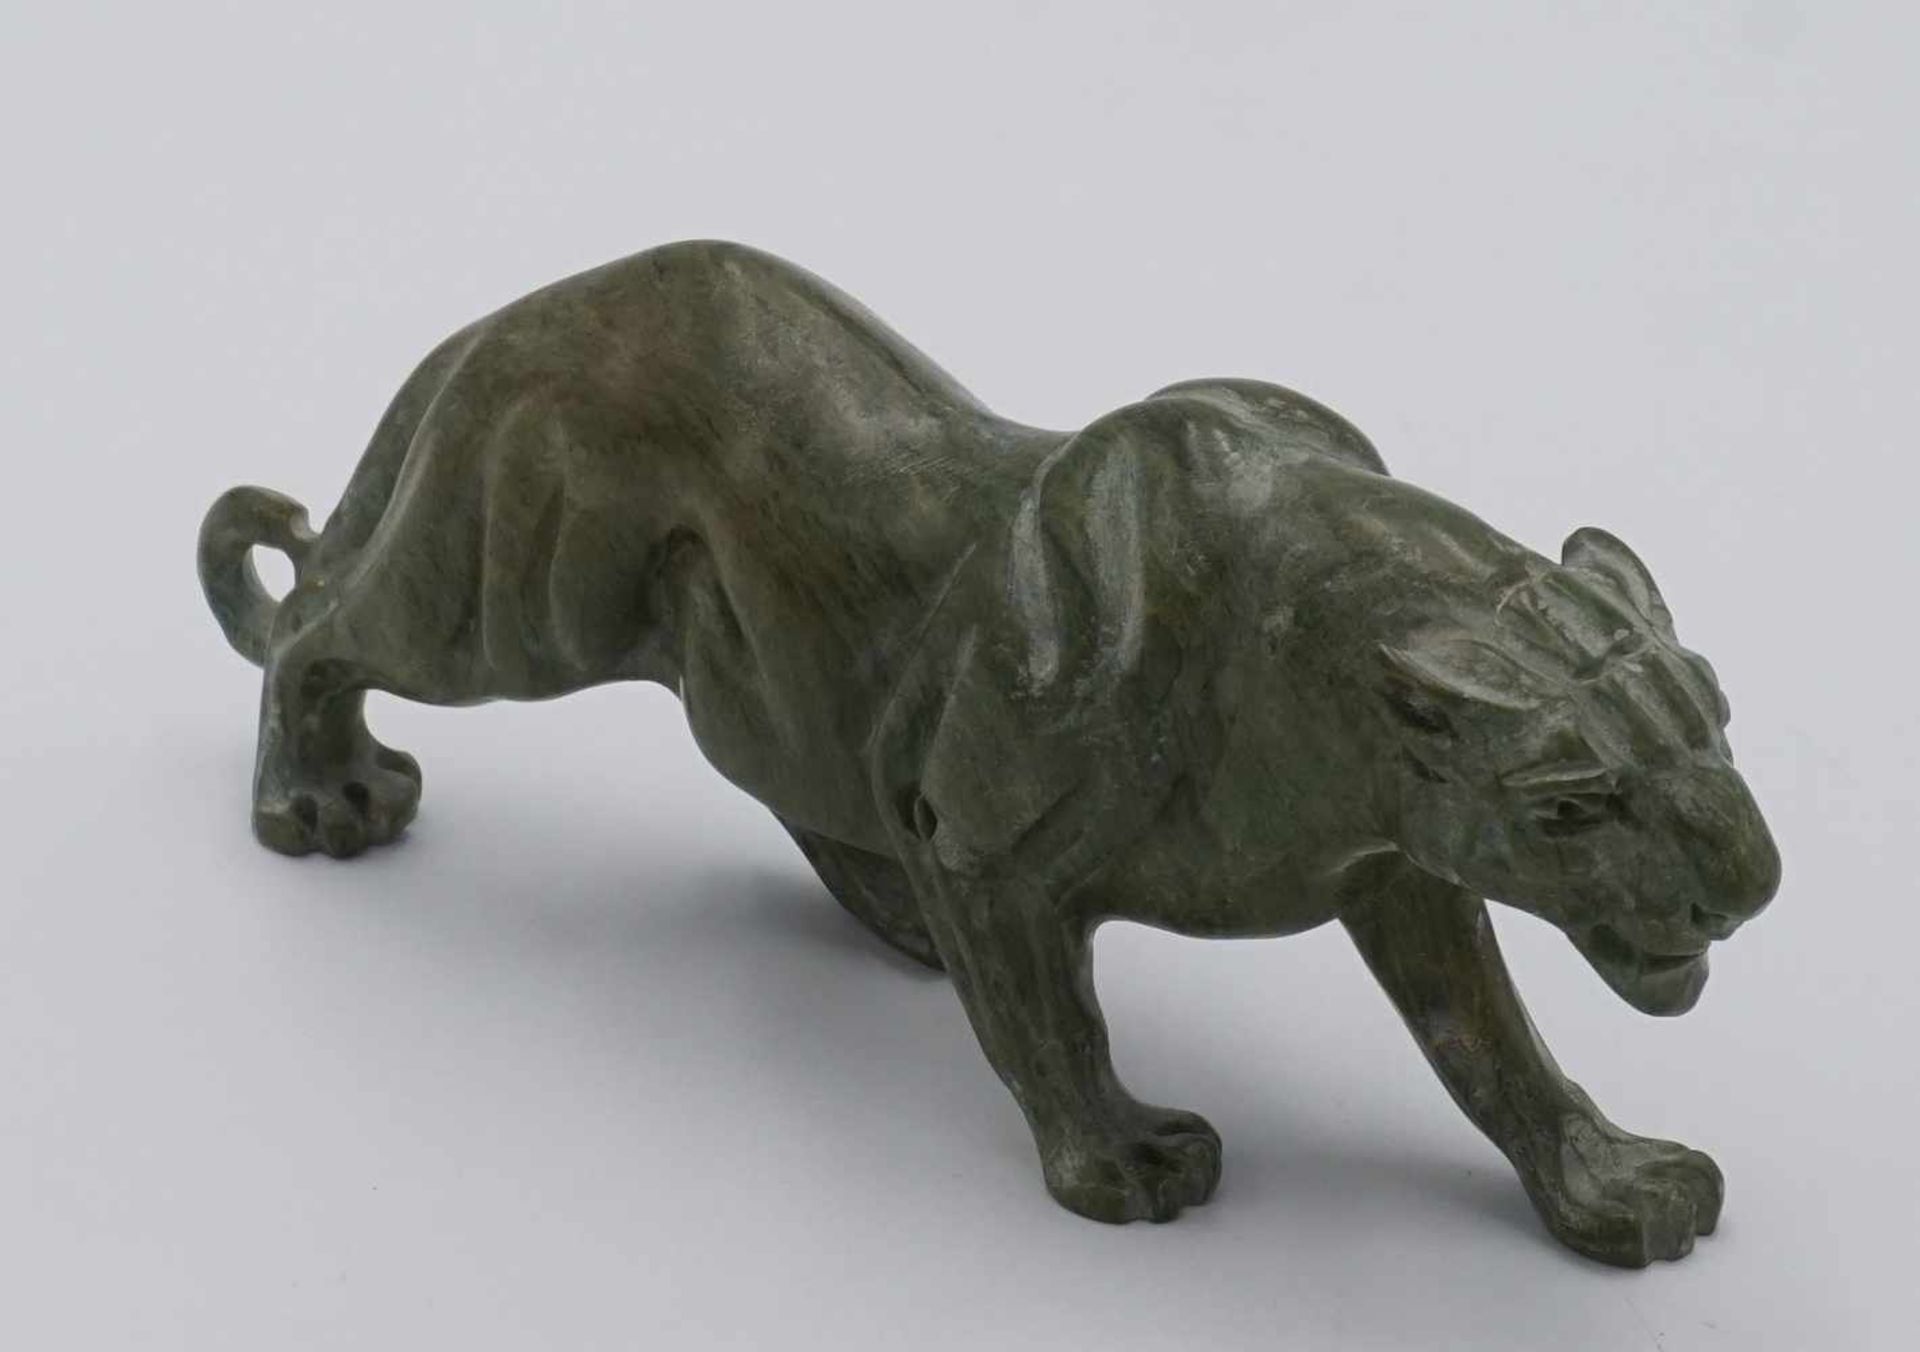 Löwin aus Greenstone, Südafrika, 2. Hälfte 20. Jh.grüner Nephrit, am Bauch monogrammiert "K.S", fein